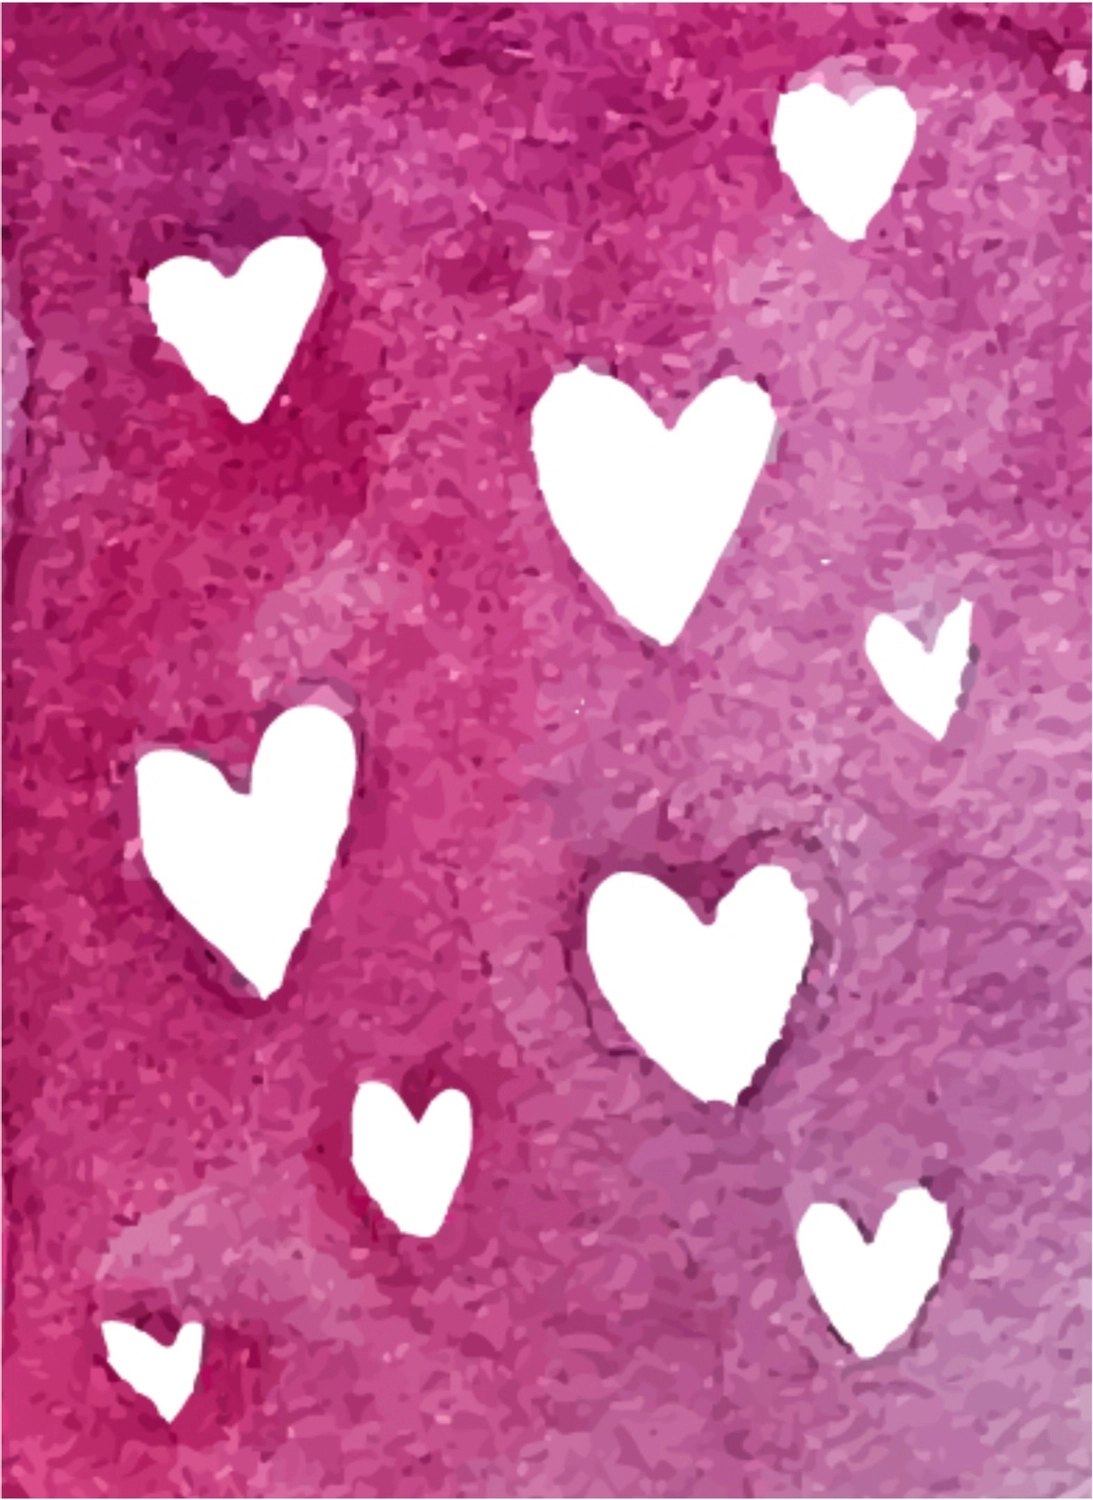 バレンタインデーグリーティングカード　紫地に白抜きのハート, グリーティングカード, グリーティング, ポストカード, グリーティングカードテンプレート